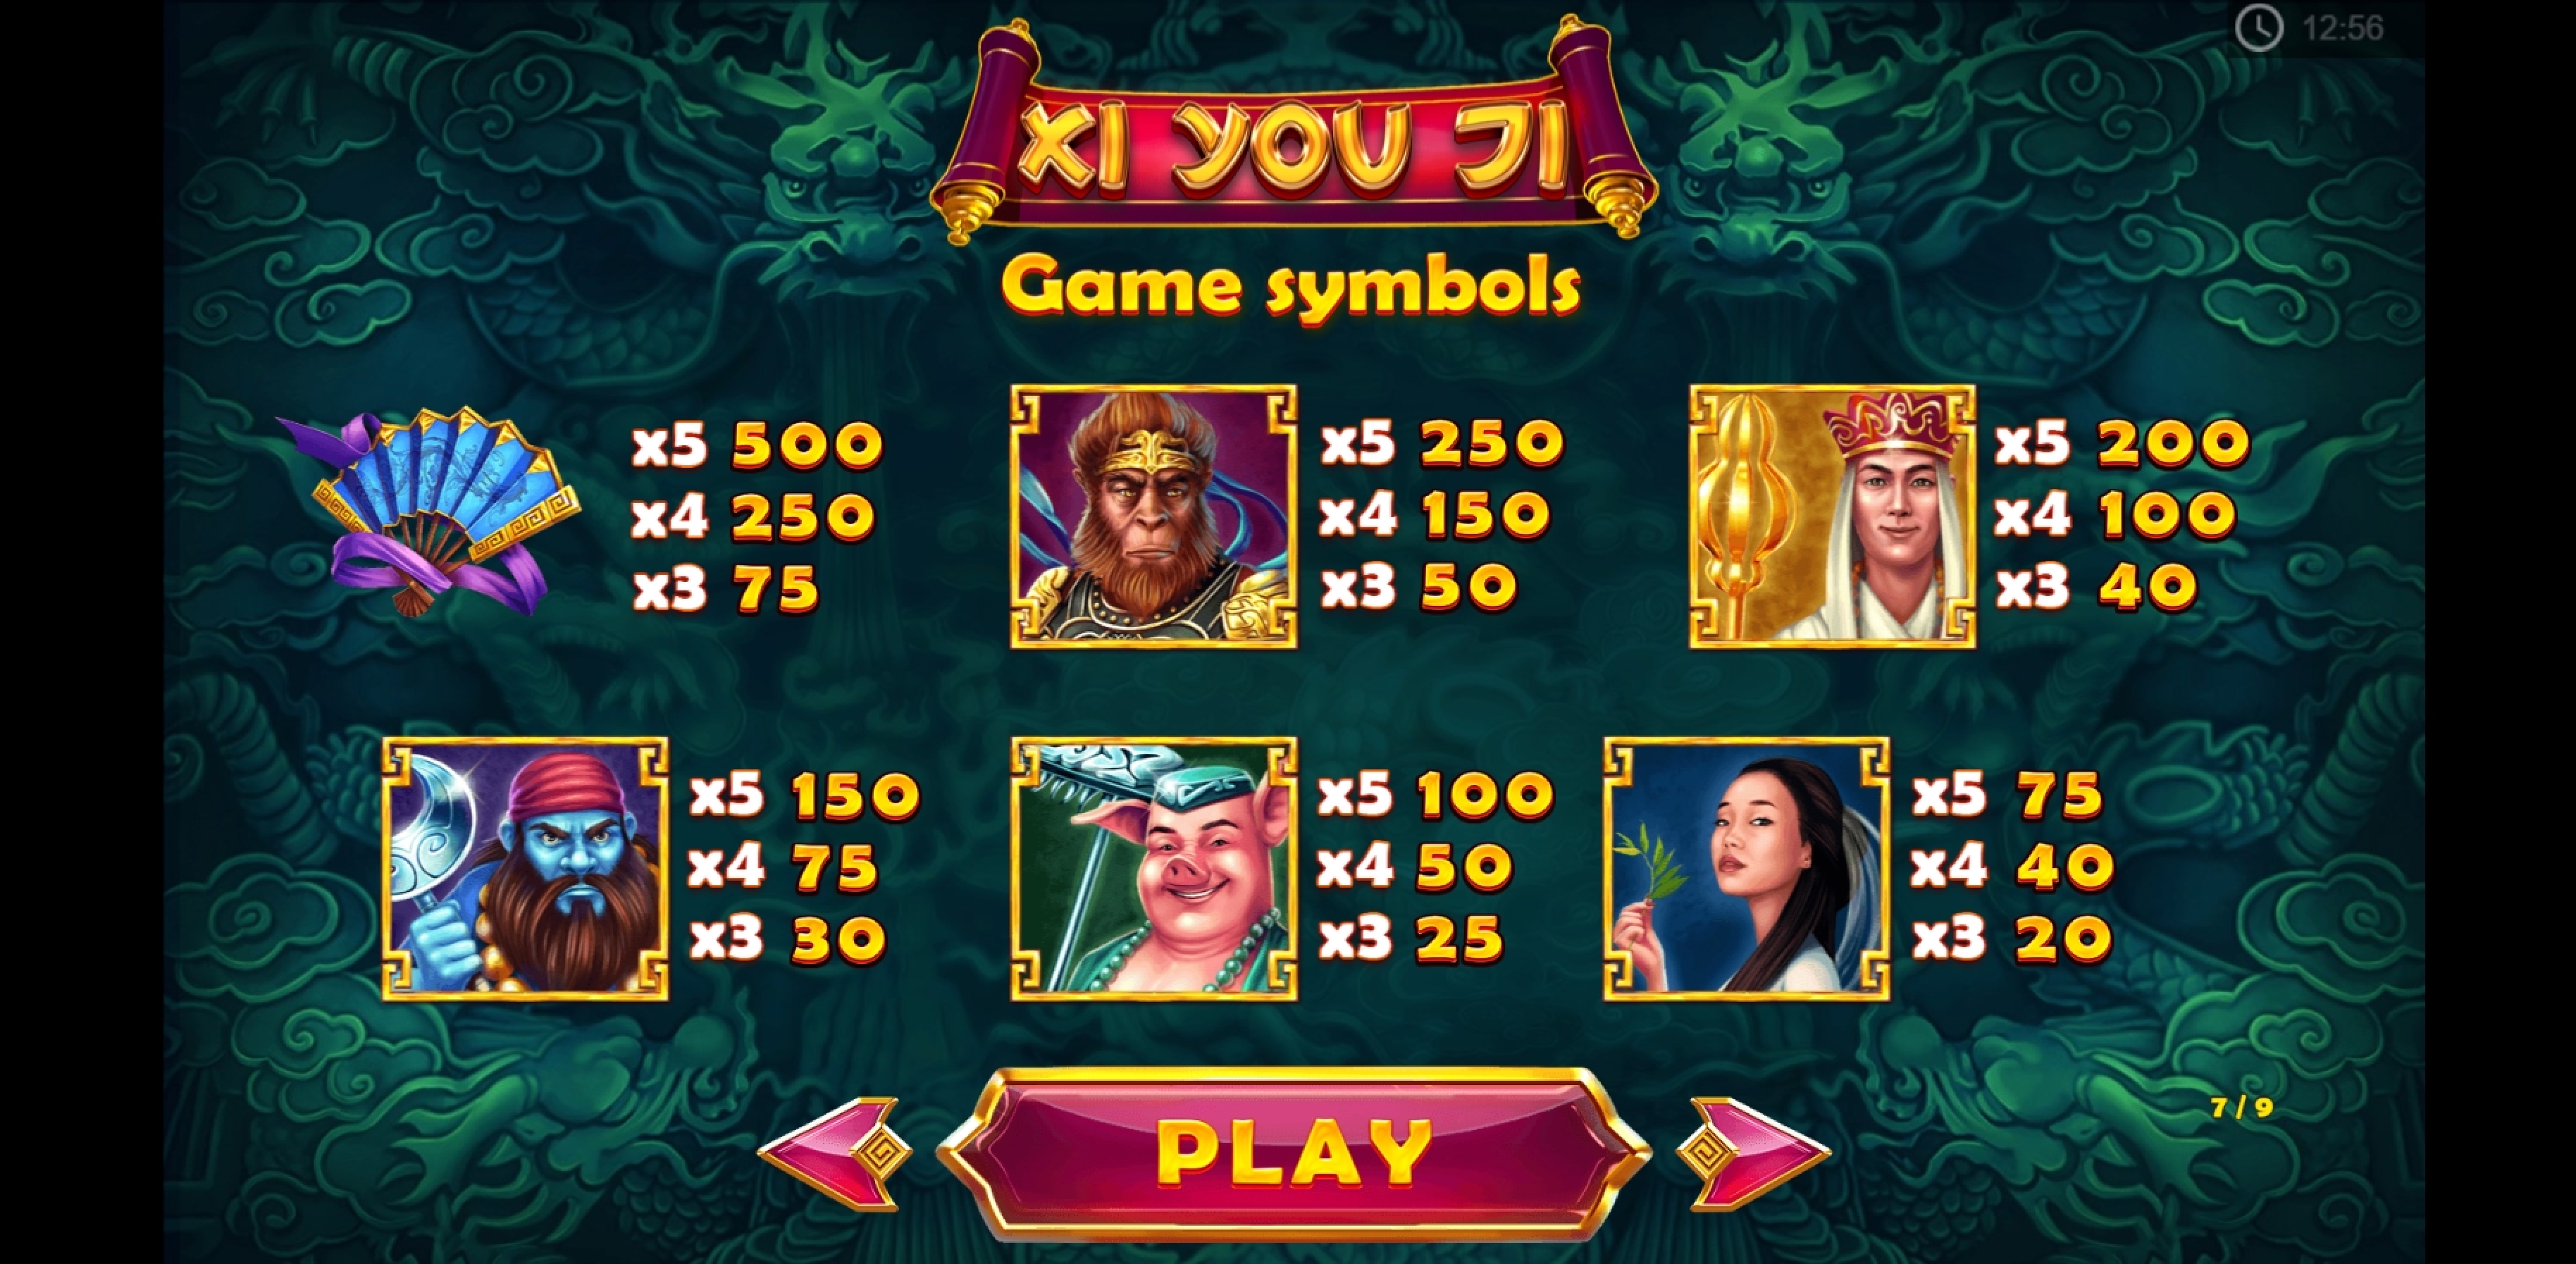 Info of Xi You Ji Slot Game by PariPlay